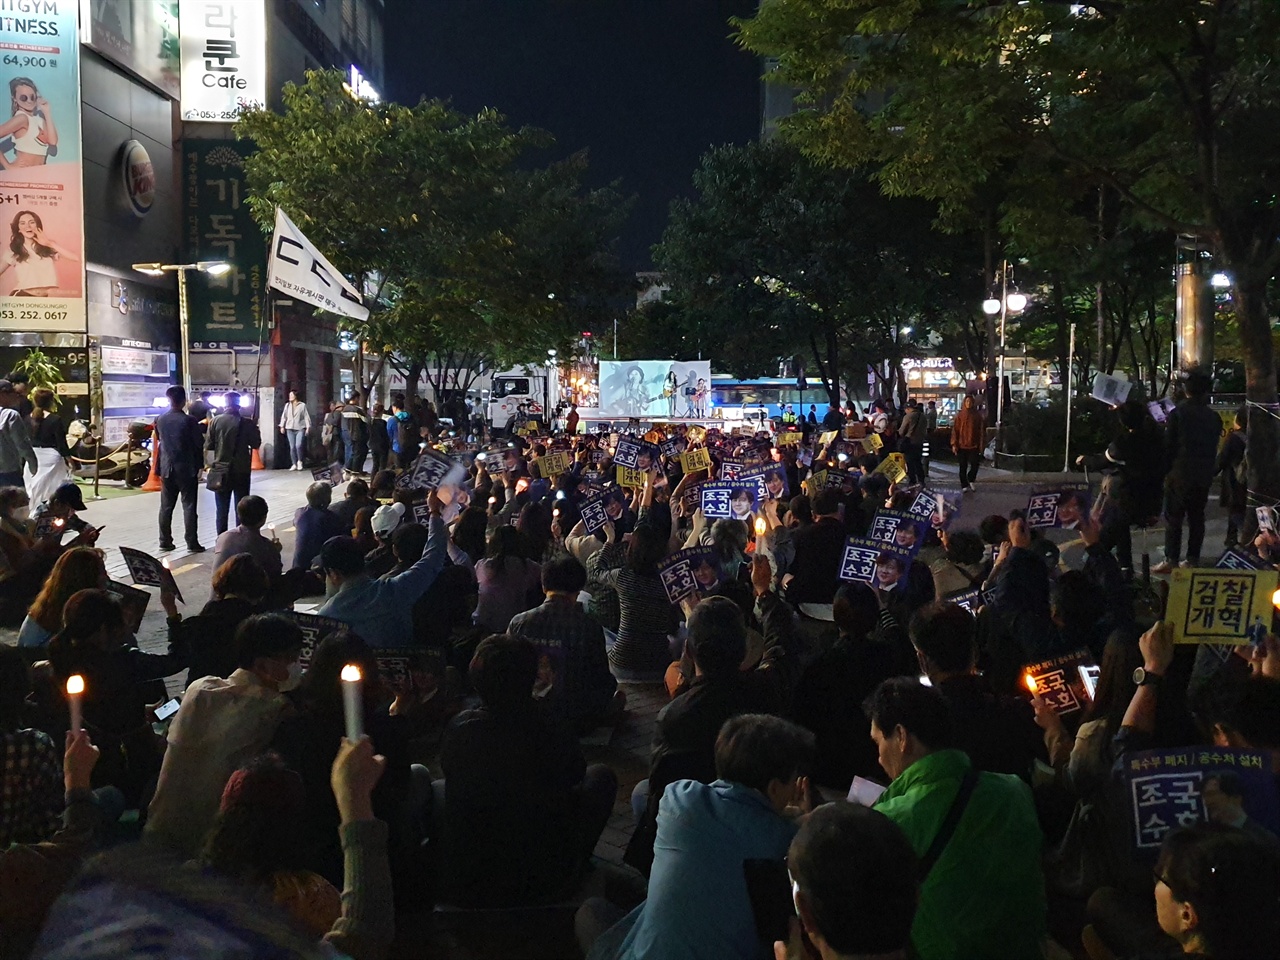 금요일 (11일) 저녁 7시, 대구 2.28 공원에서 검찰개혁을 위한 3차 촛불 문화제가 열렸다. 